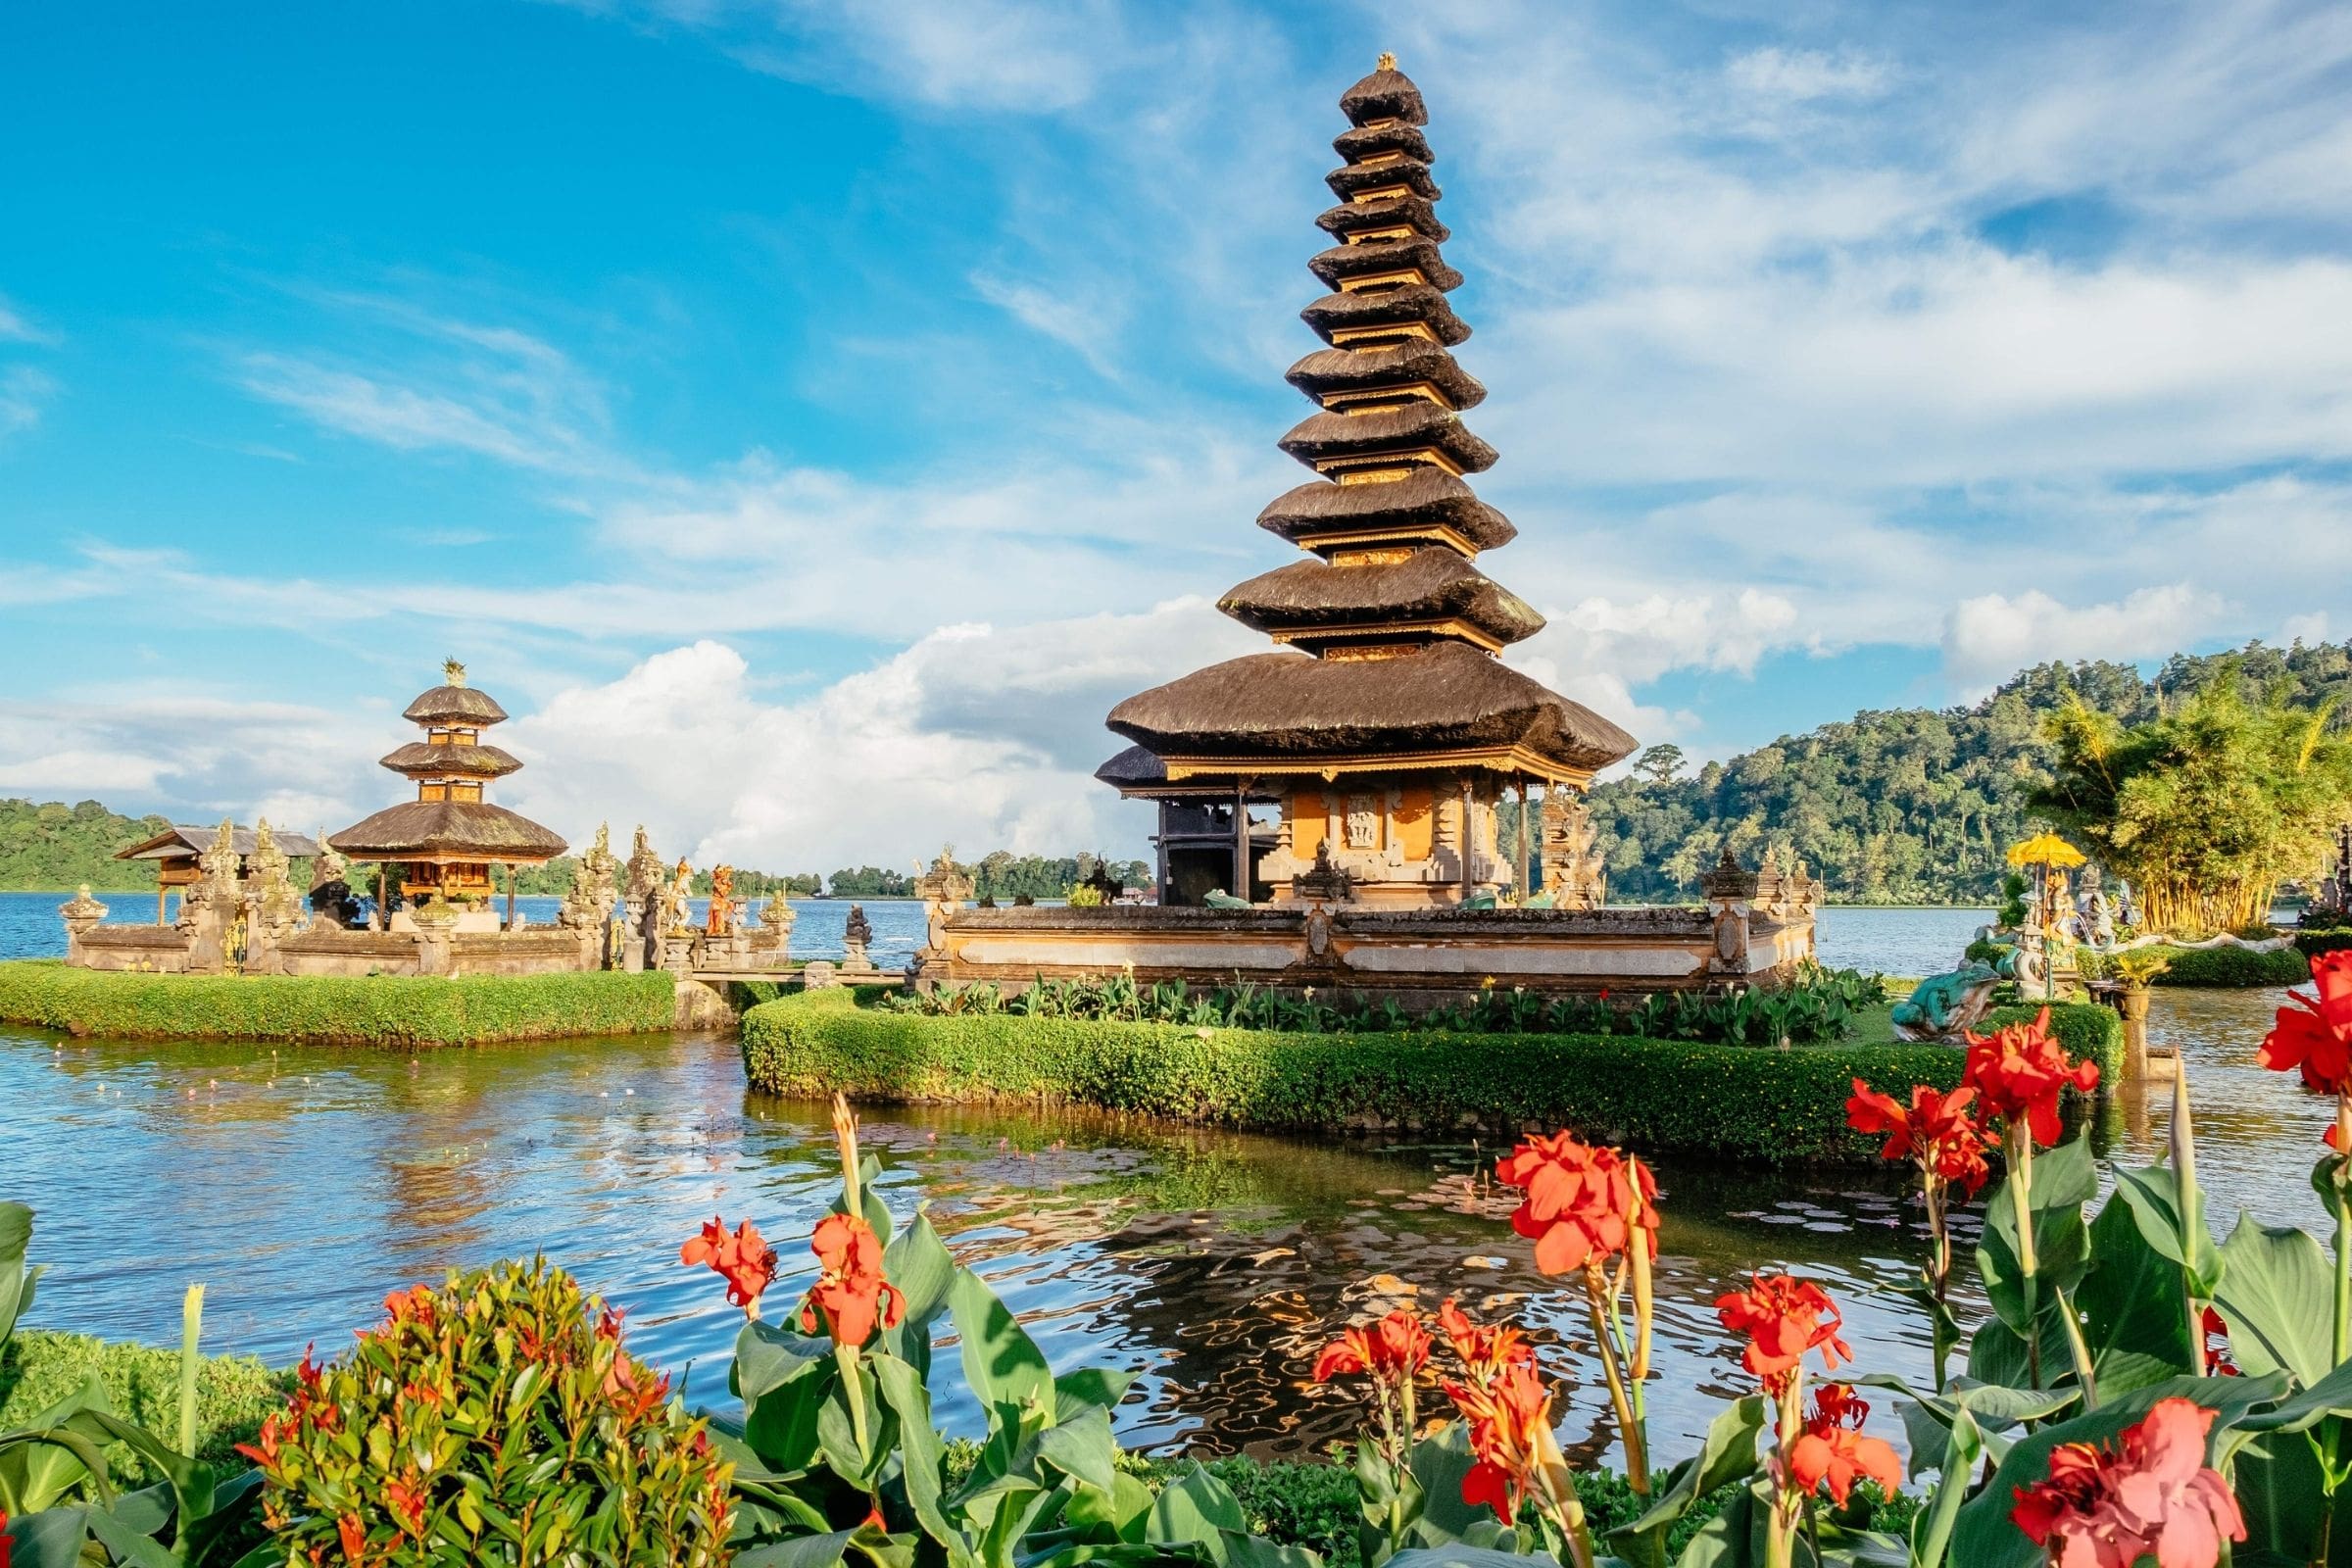 Rejser til Bali C&C er eksperter i skræddersyede drømmerejser